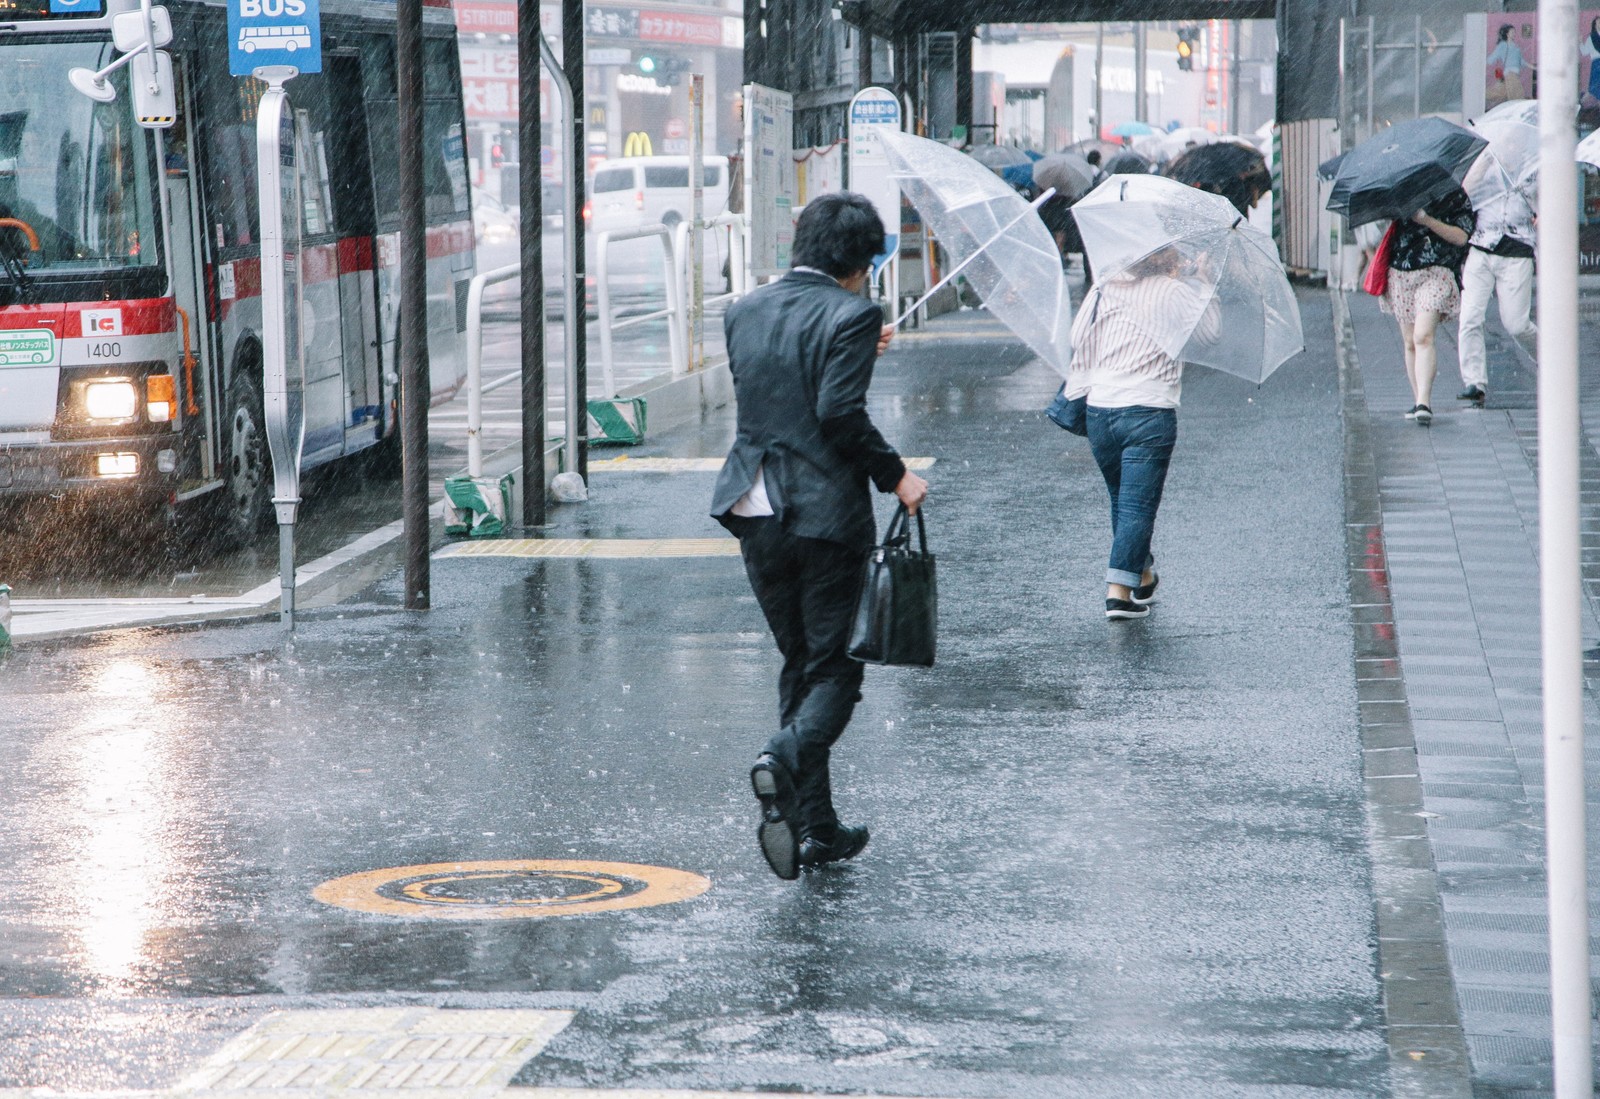 http://iphonequick.com/yamato/rain.jpg